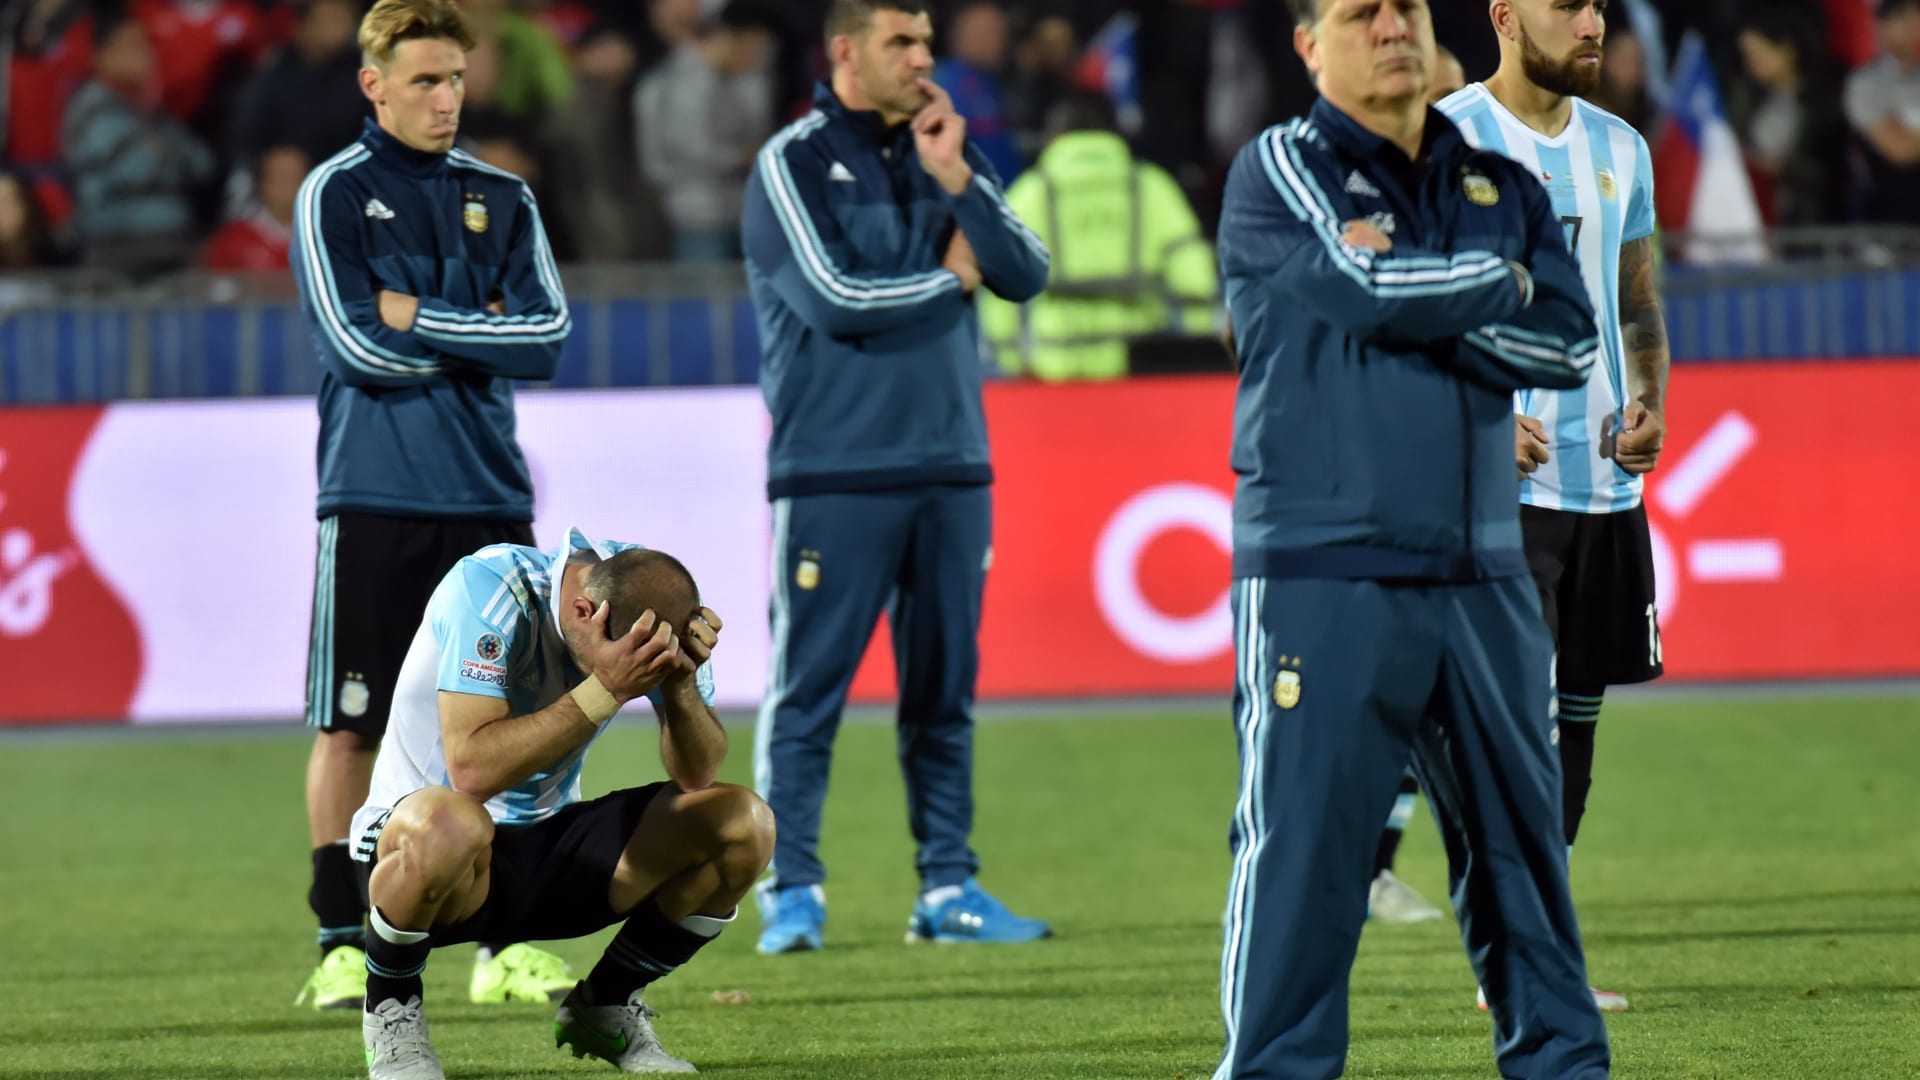 الوجوم بدا واضحا على وجوه أفراد الطاقم الفني للمنتخب الأرجنتيني بعد نهاية المباراة.